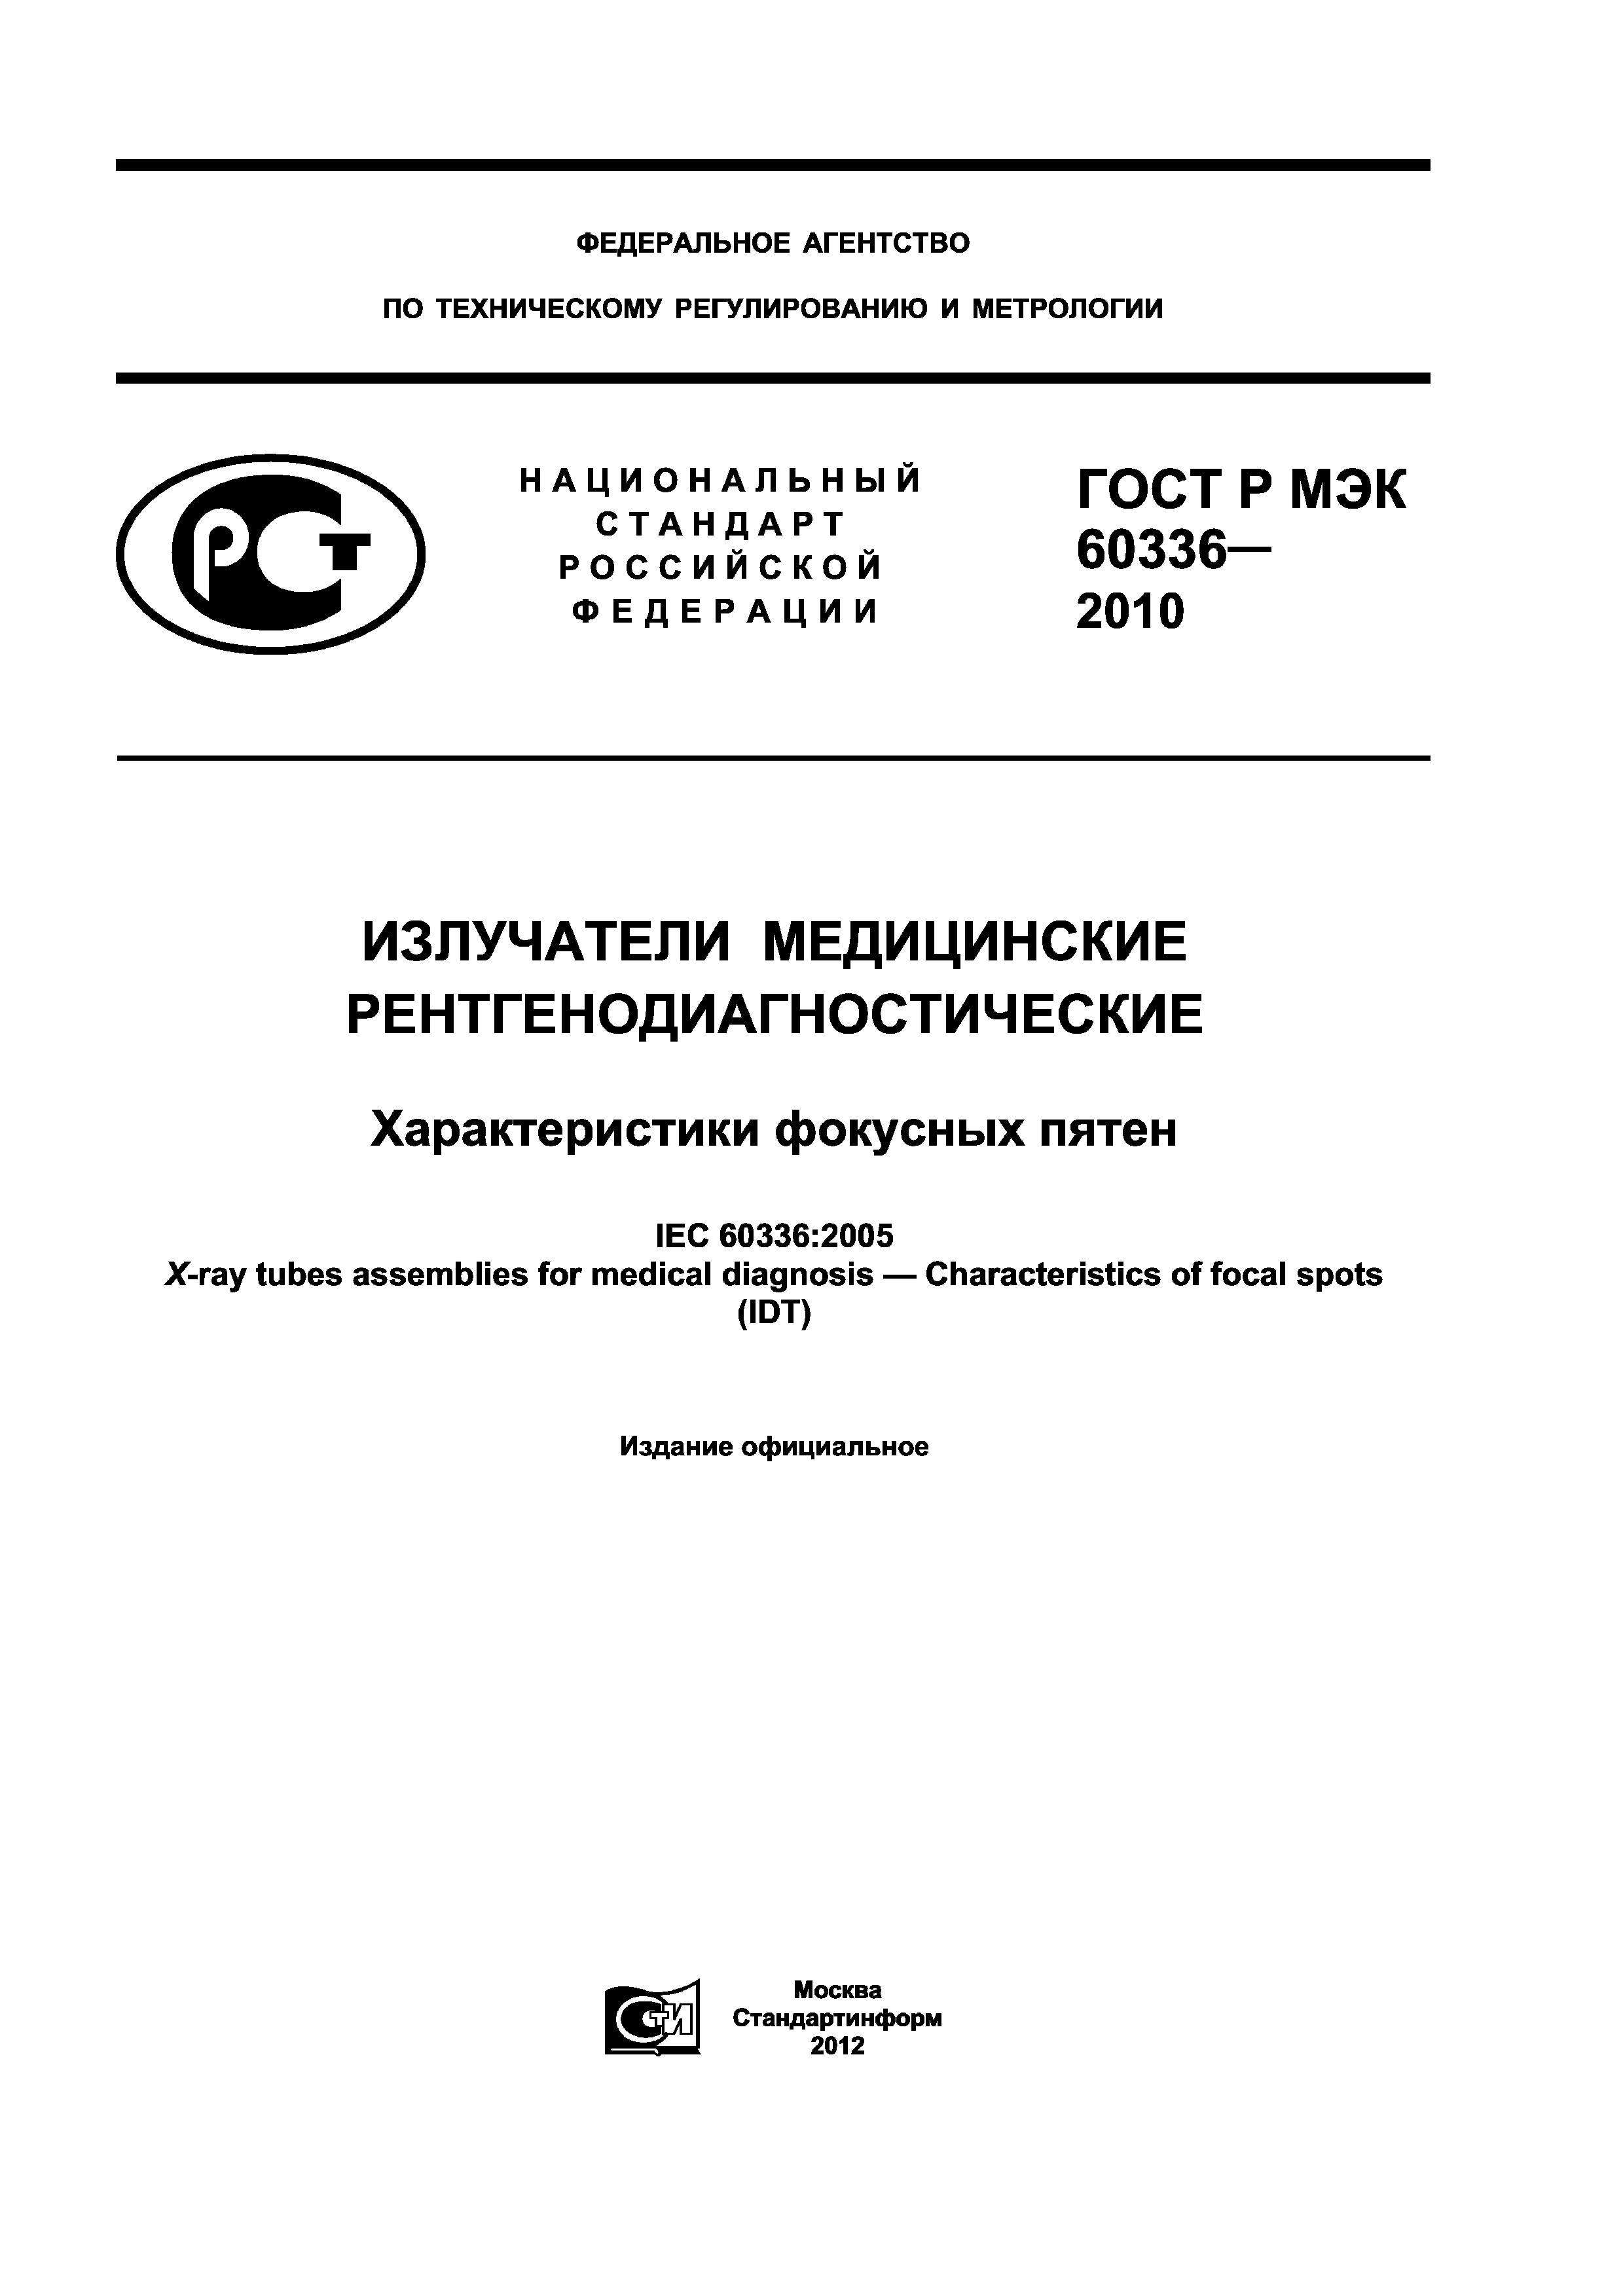 ГОСТ Р МЭК 60336-2010